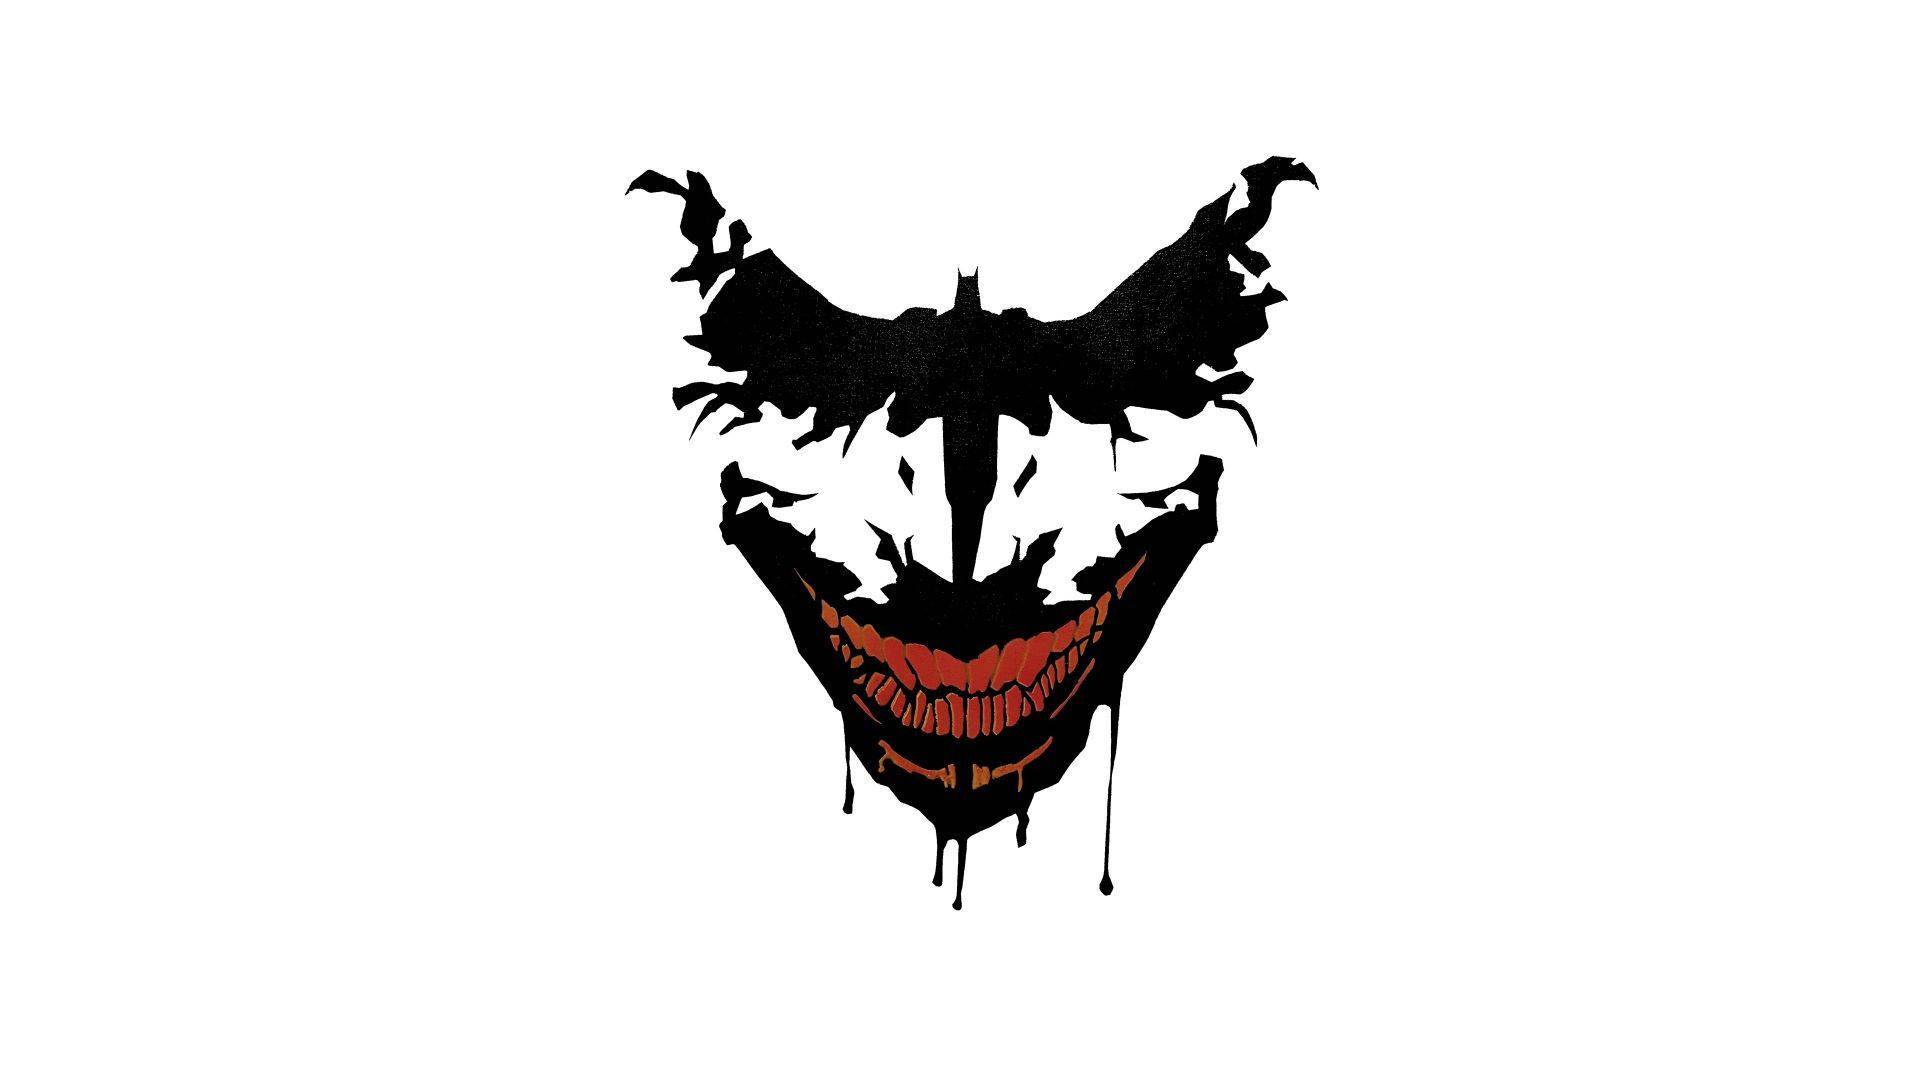 Joker, The Deadly Player Of Playerunknown's Battlegrounds (pubg)